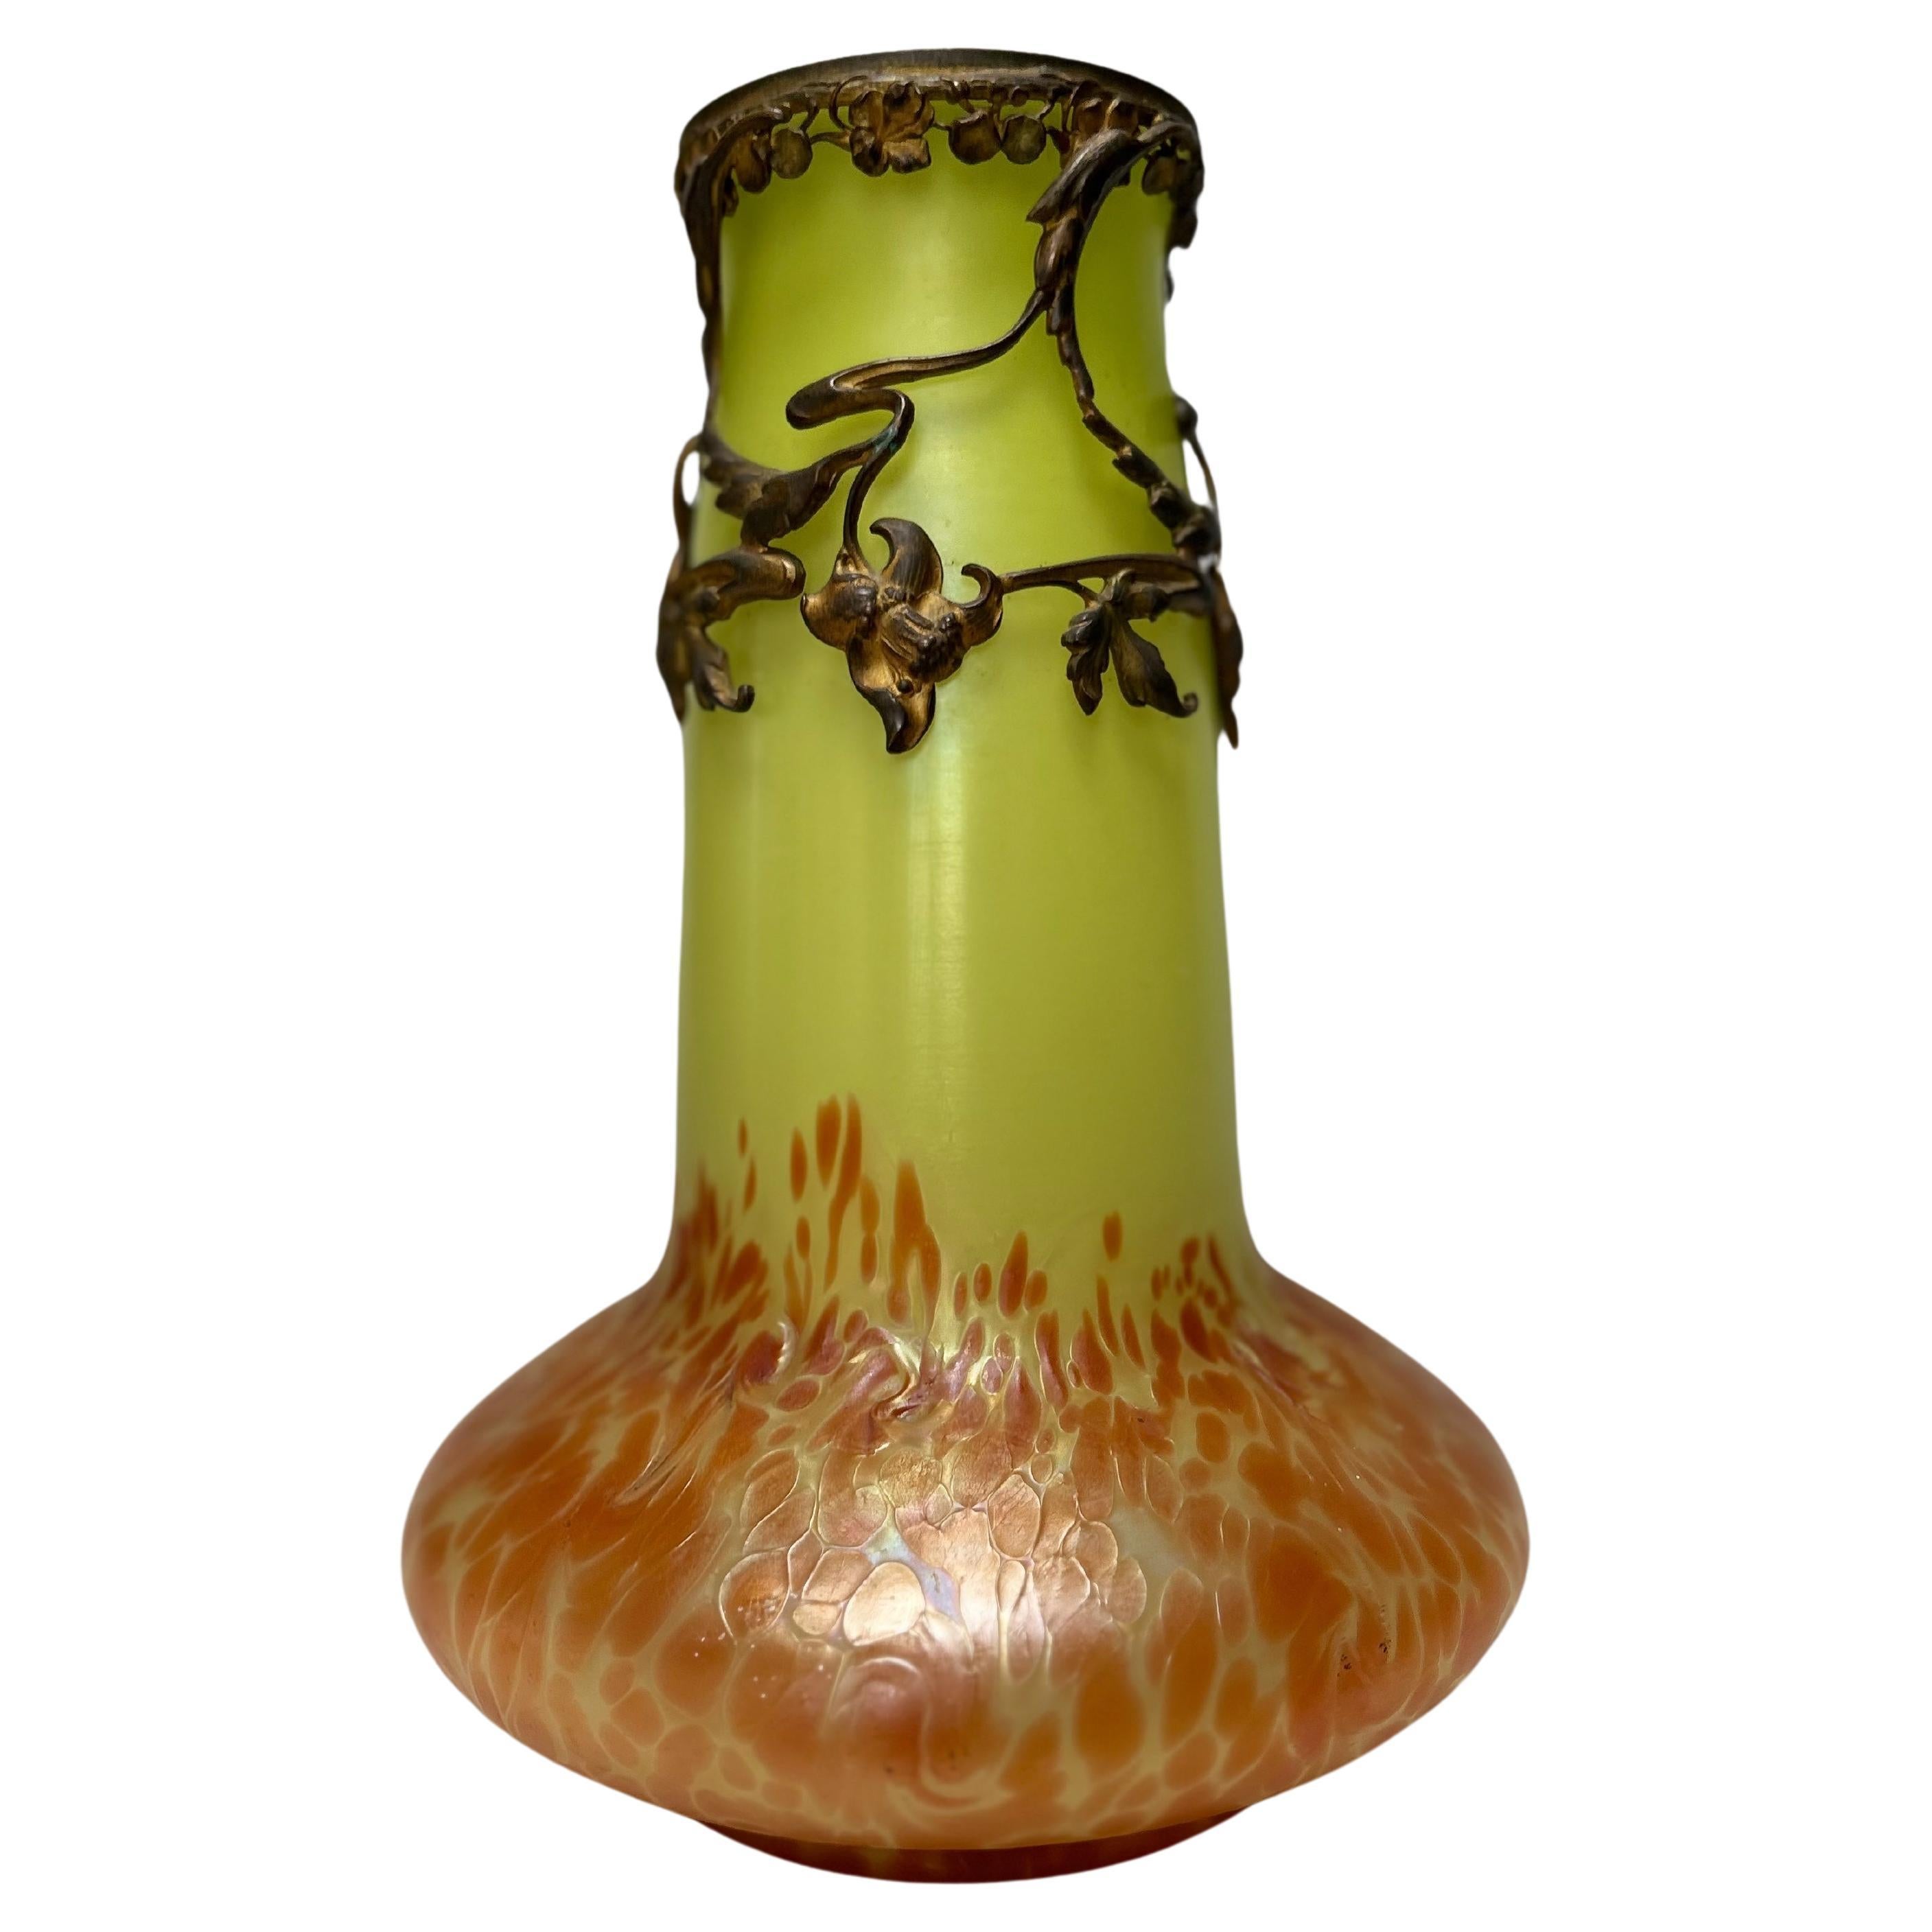 Austrian Art Nouveau Vase Attributed To Loetz